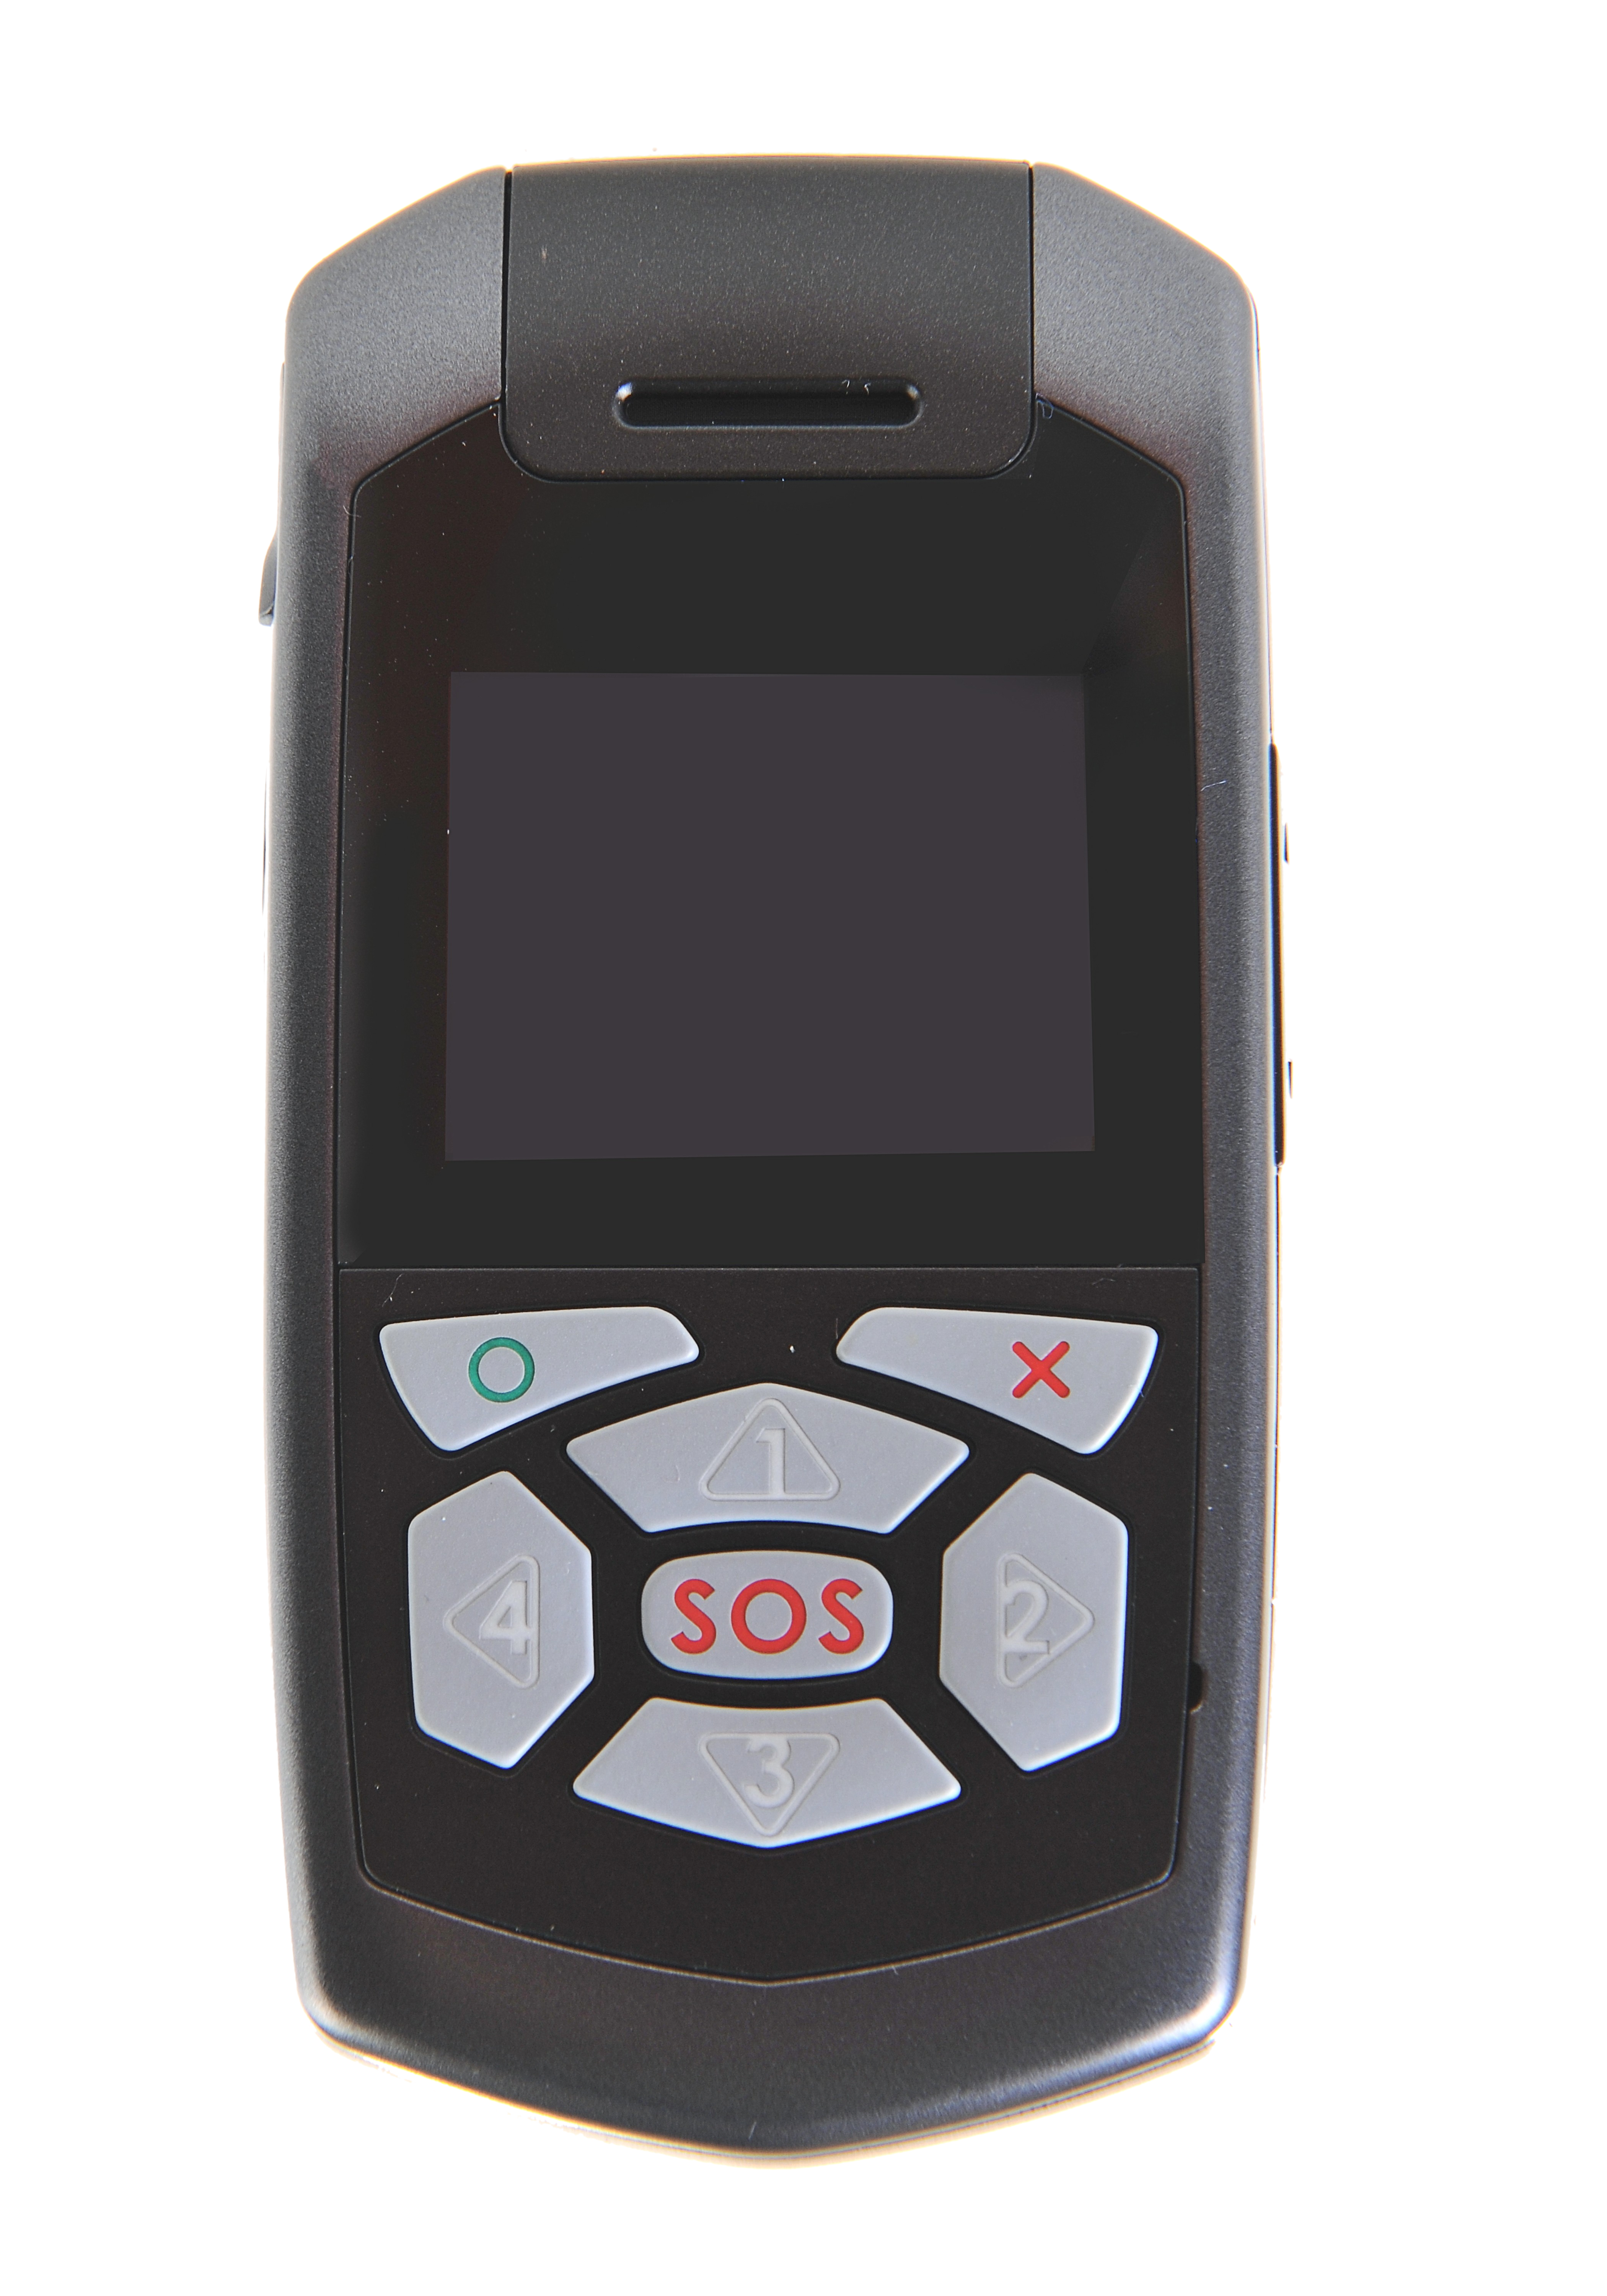 potente telefono GSM e localizzatore tracker GPS pensato appositamente per anziani, bambini e lavoratori isolati